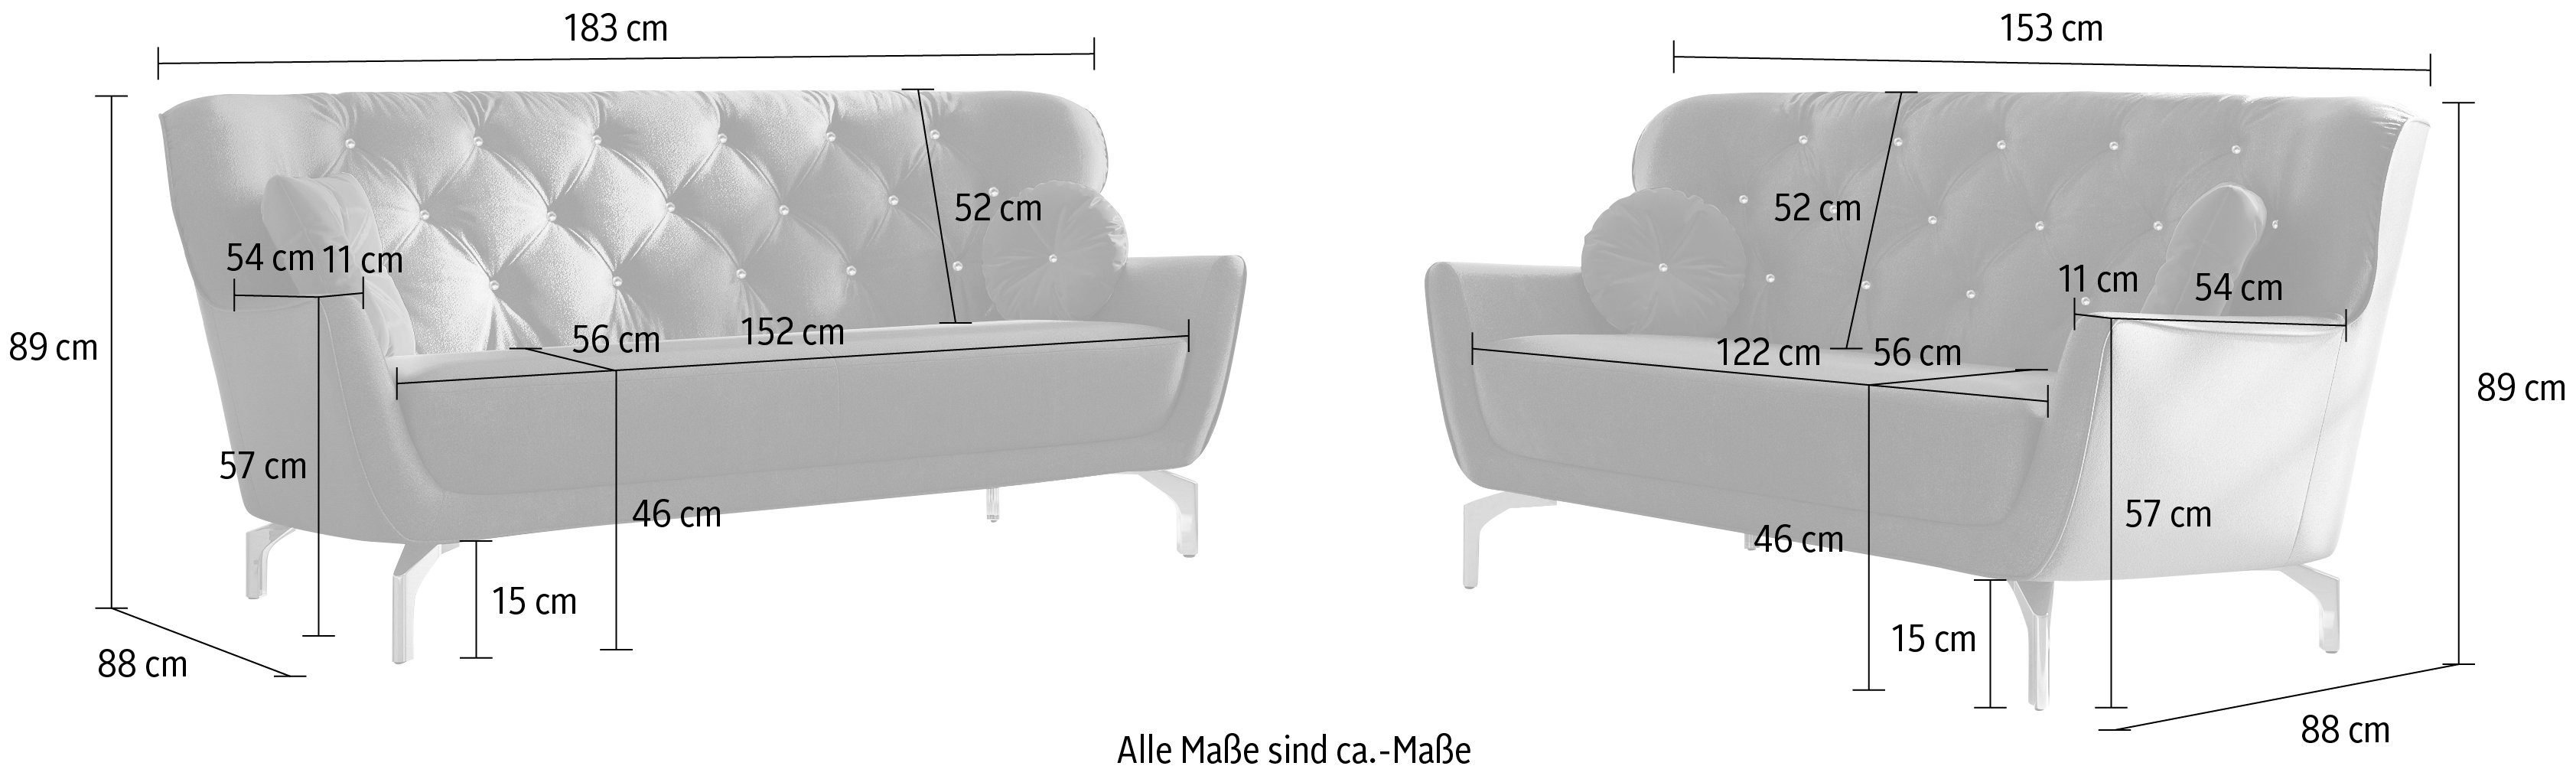 Zierkissen Metallfüße (2-tlg), mit goldfarbene sit&more Polstergarnitur 3 4 inkl. Strass-Stein, V, Orient